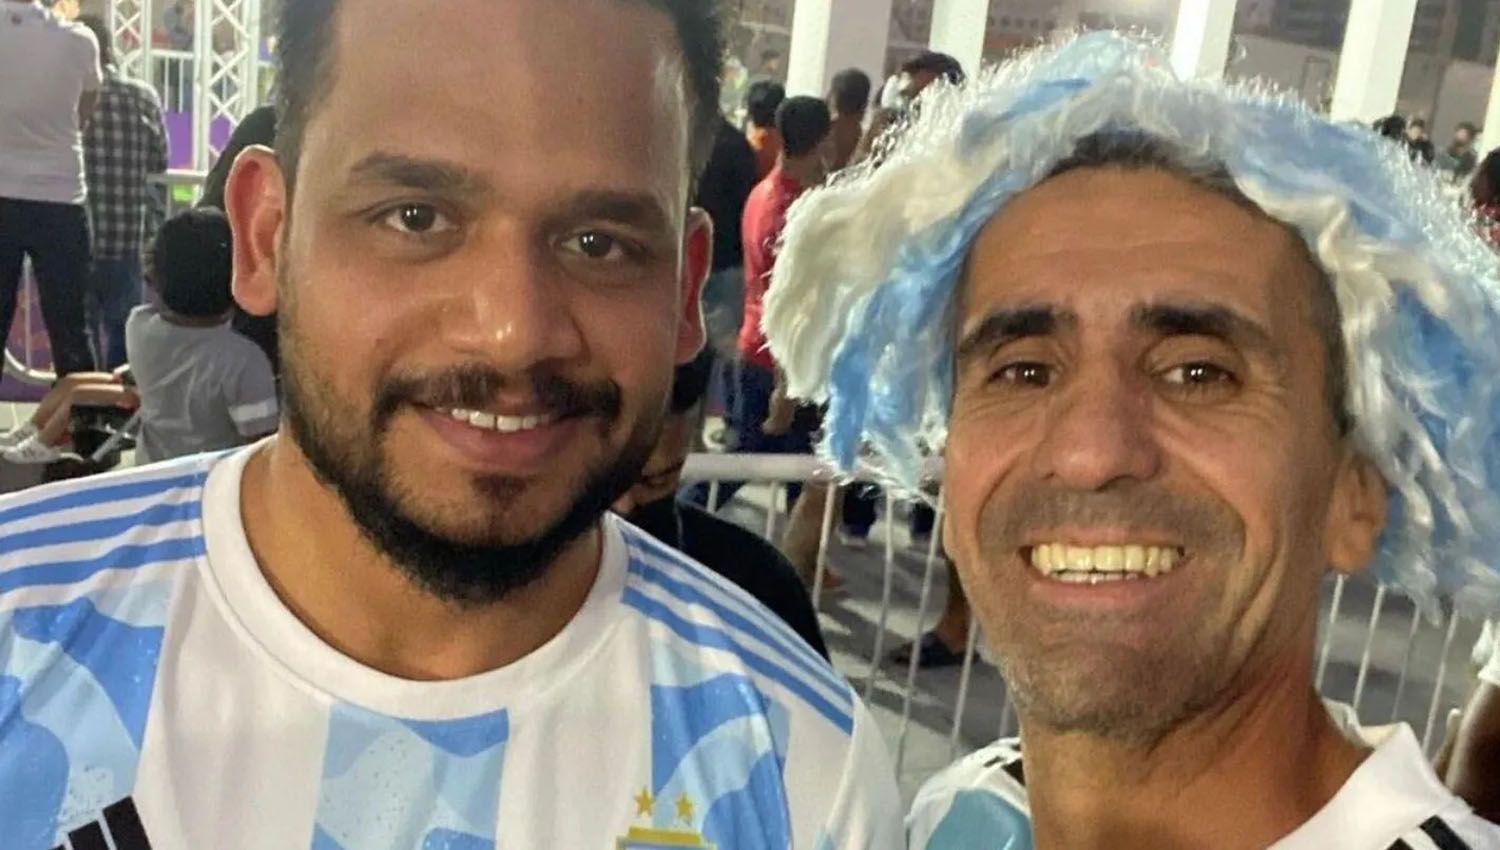 Los hinchas argentinos detenidos en Qatar seguiraacuten presos y no veraacuten el Mundial